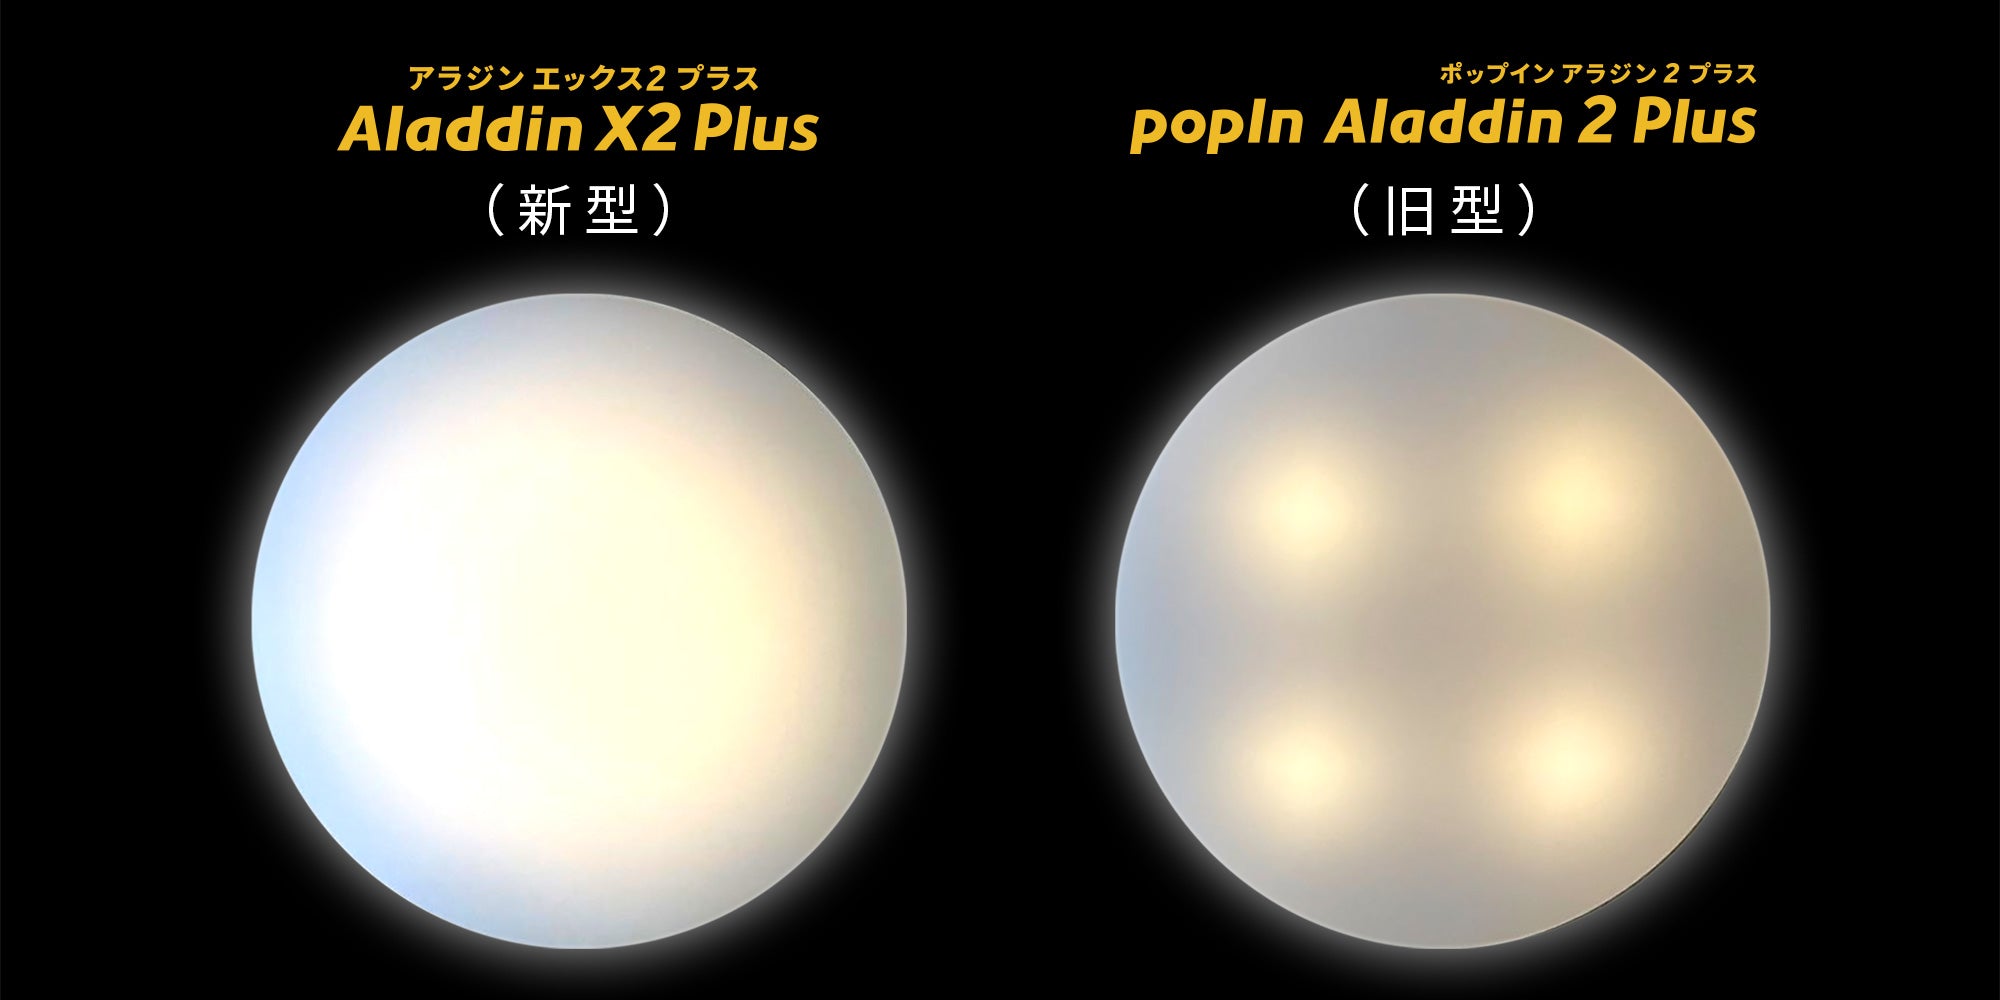 さらに進化したAladdin X2 Plus（アラジン エックス ツー プラス）